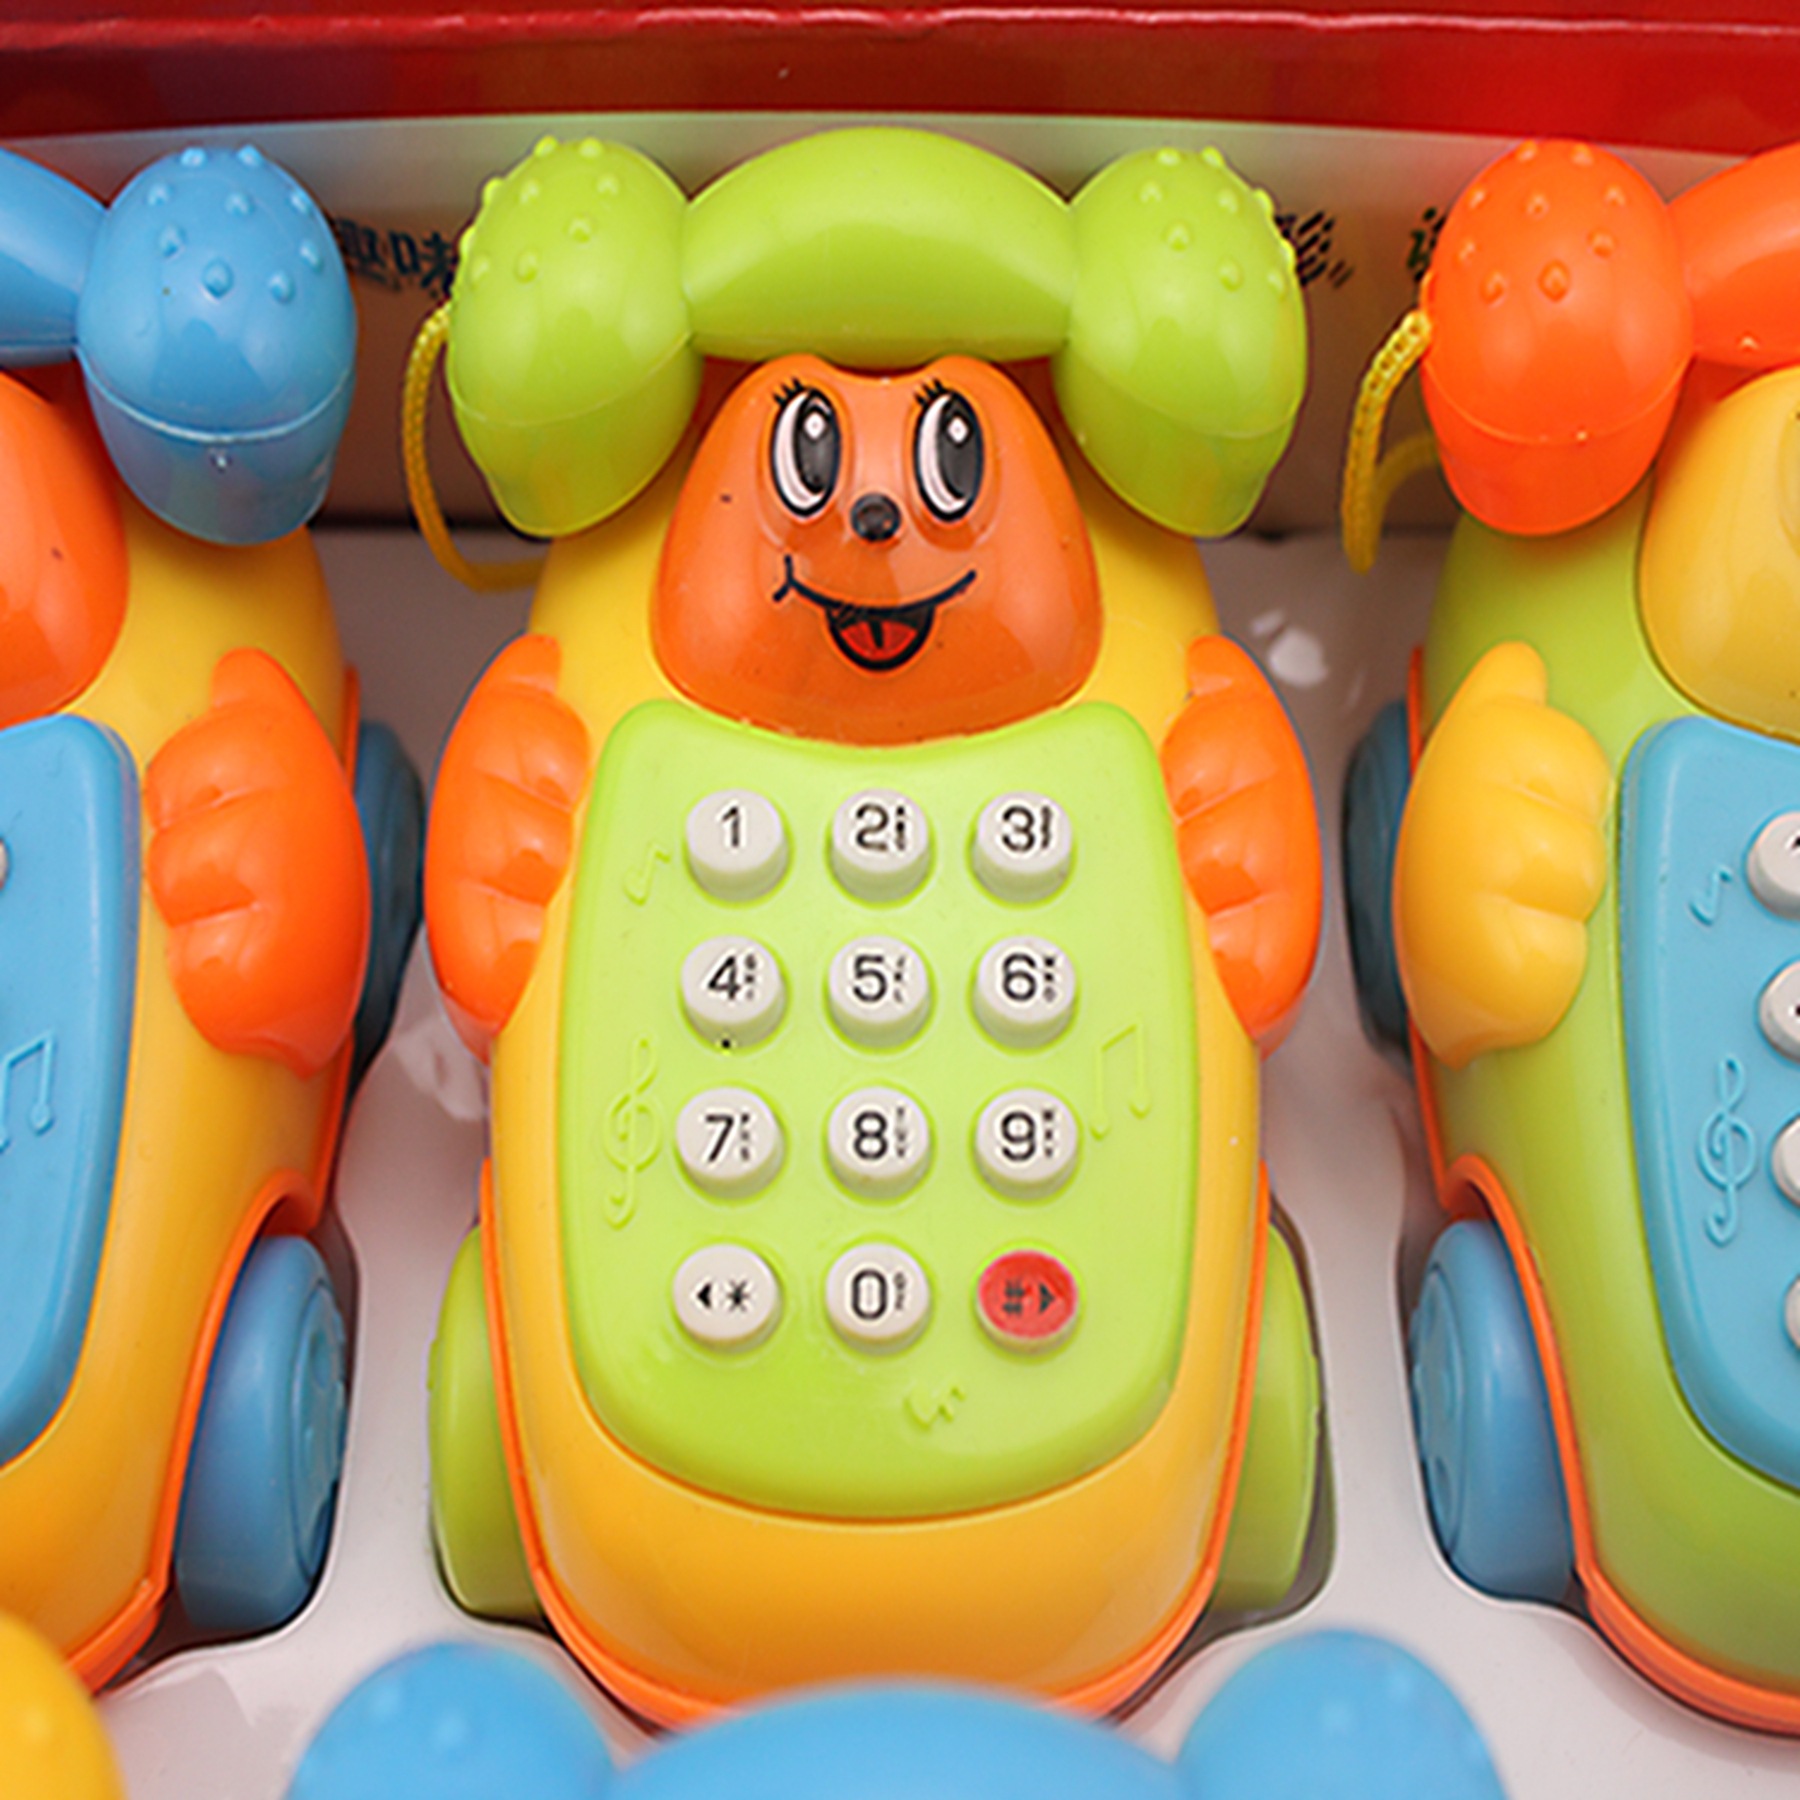 热销玩具 音乐电话机 卡通电话机 热销多彩儿童电话机产品批发